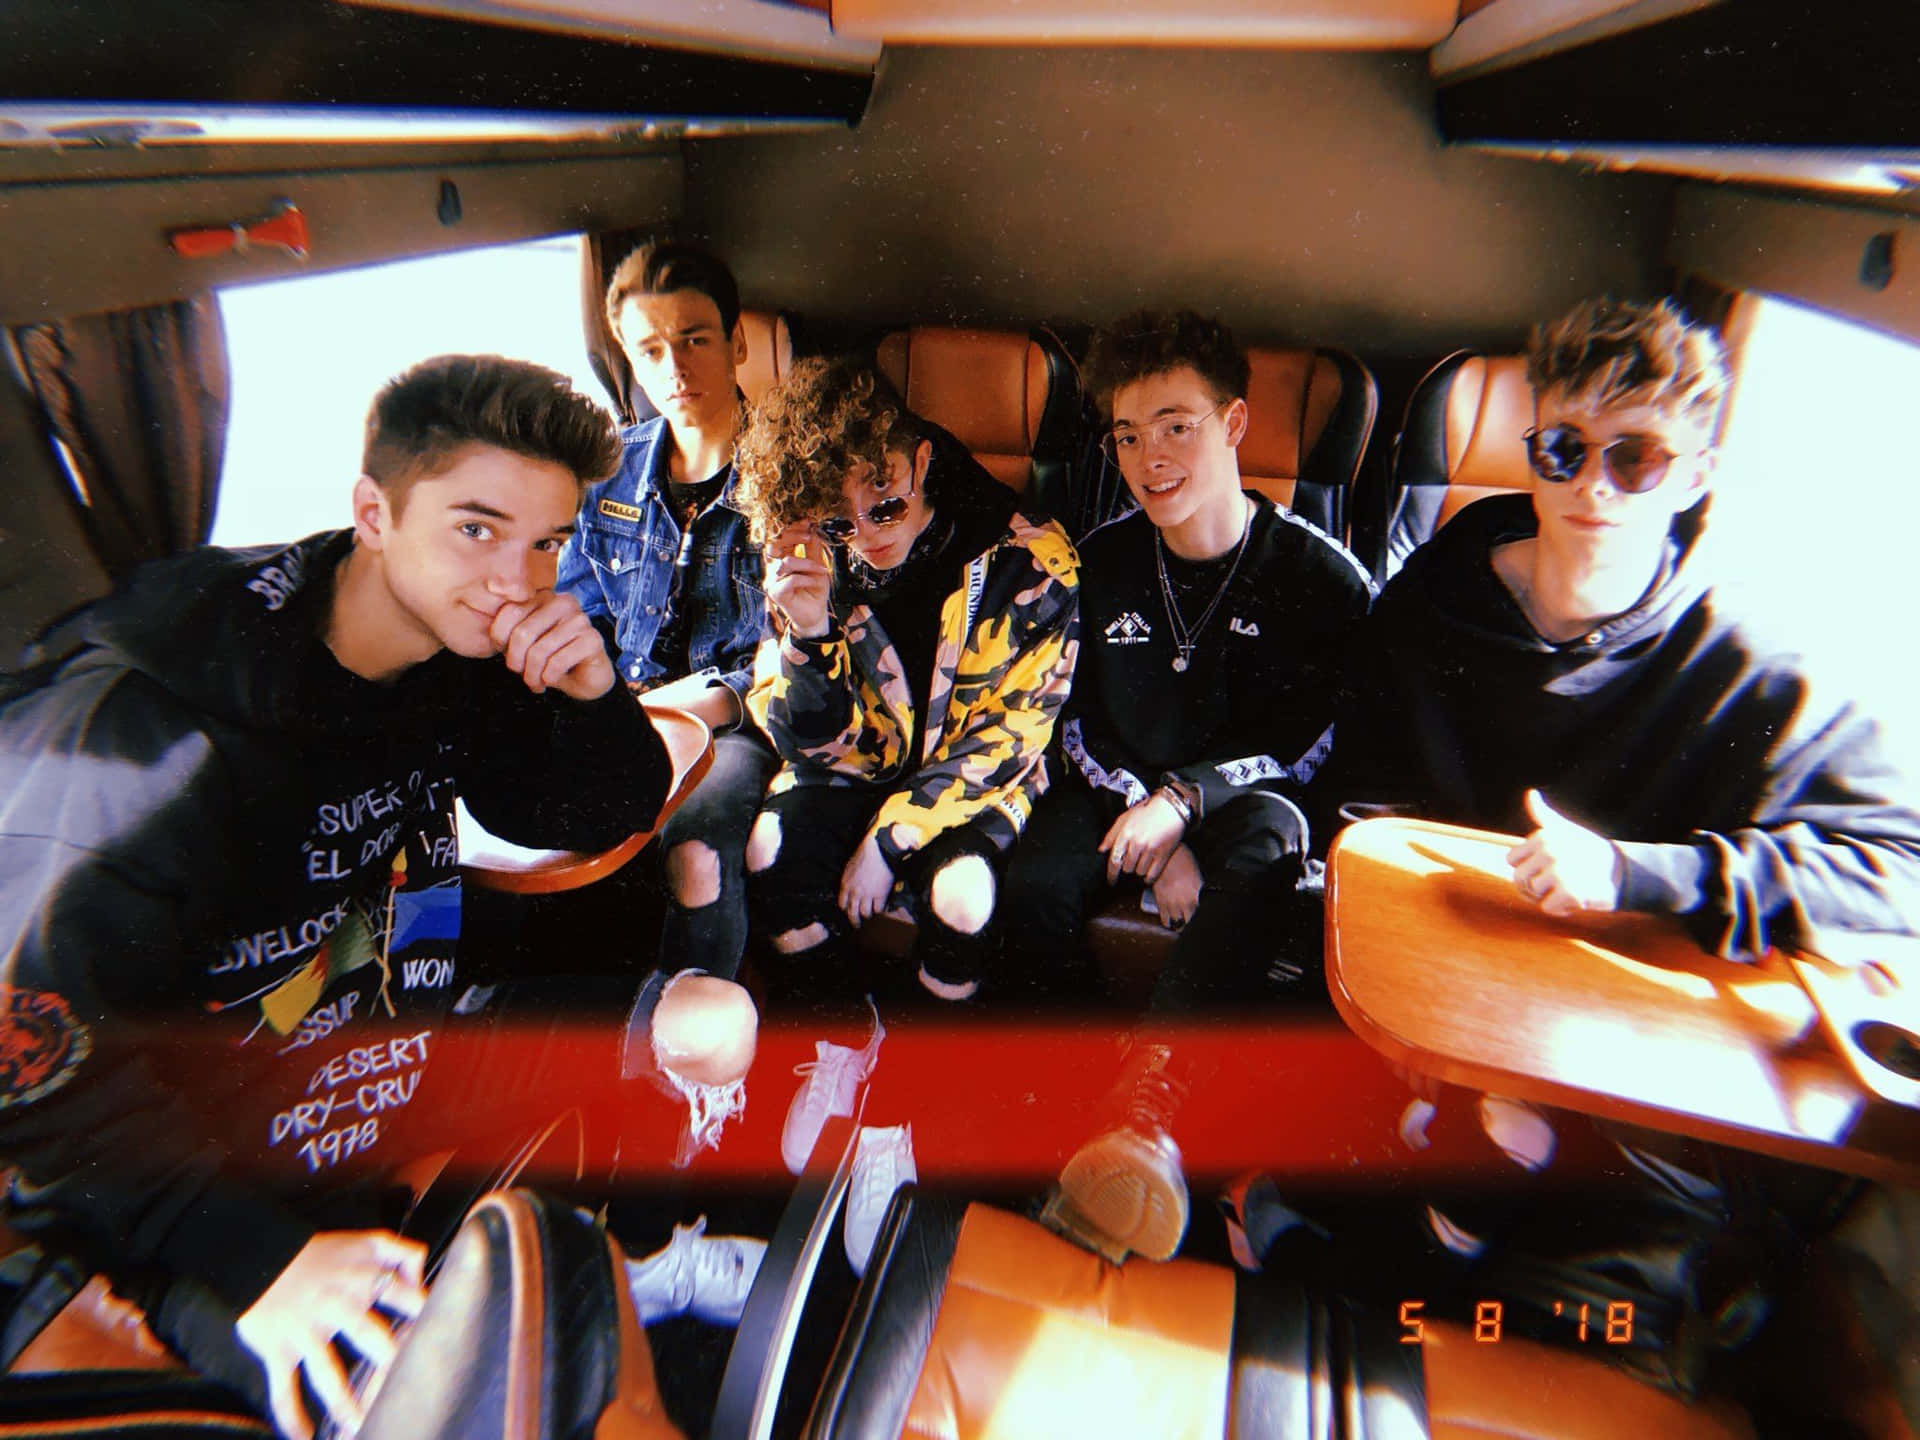 En gruppe unge mænd, der sidder i en varevogn Wallpaper